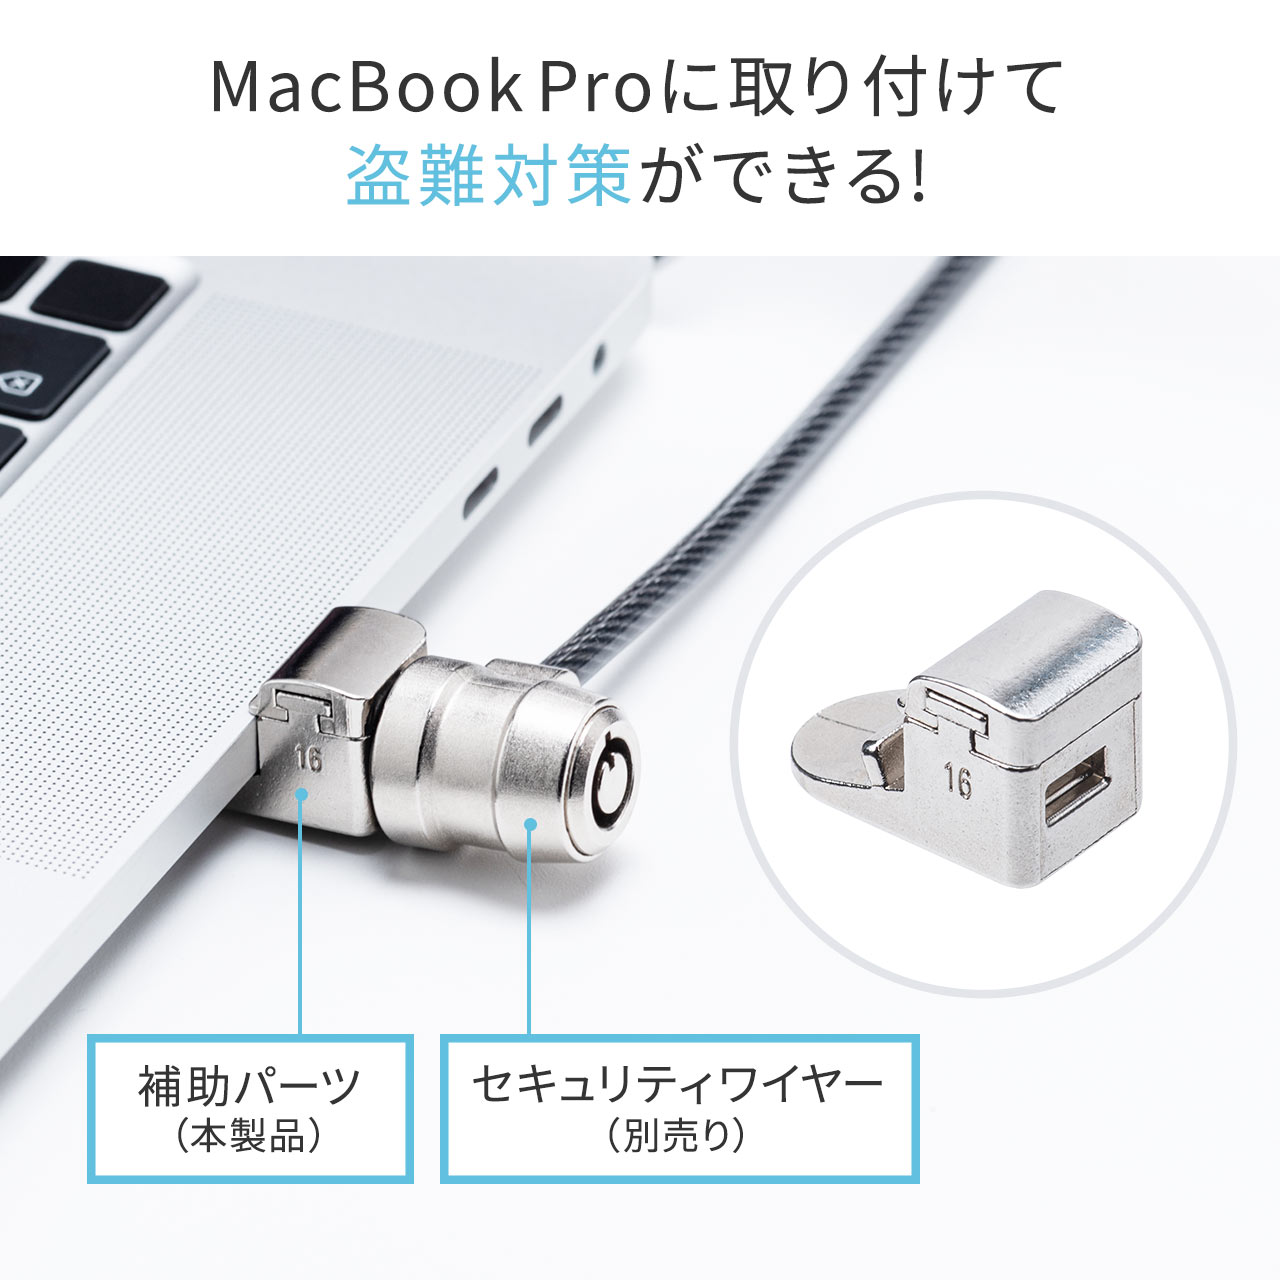 Macbook ProZLeBi16C`MacBook ProEA2141E3~7mmXbgj 200-SL084